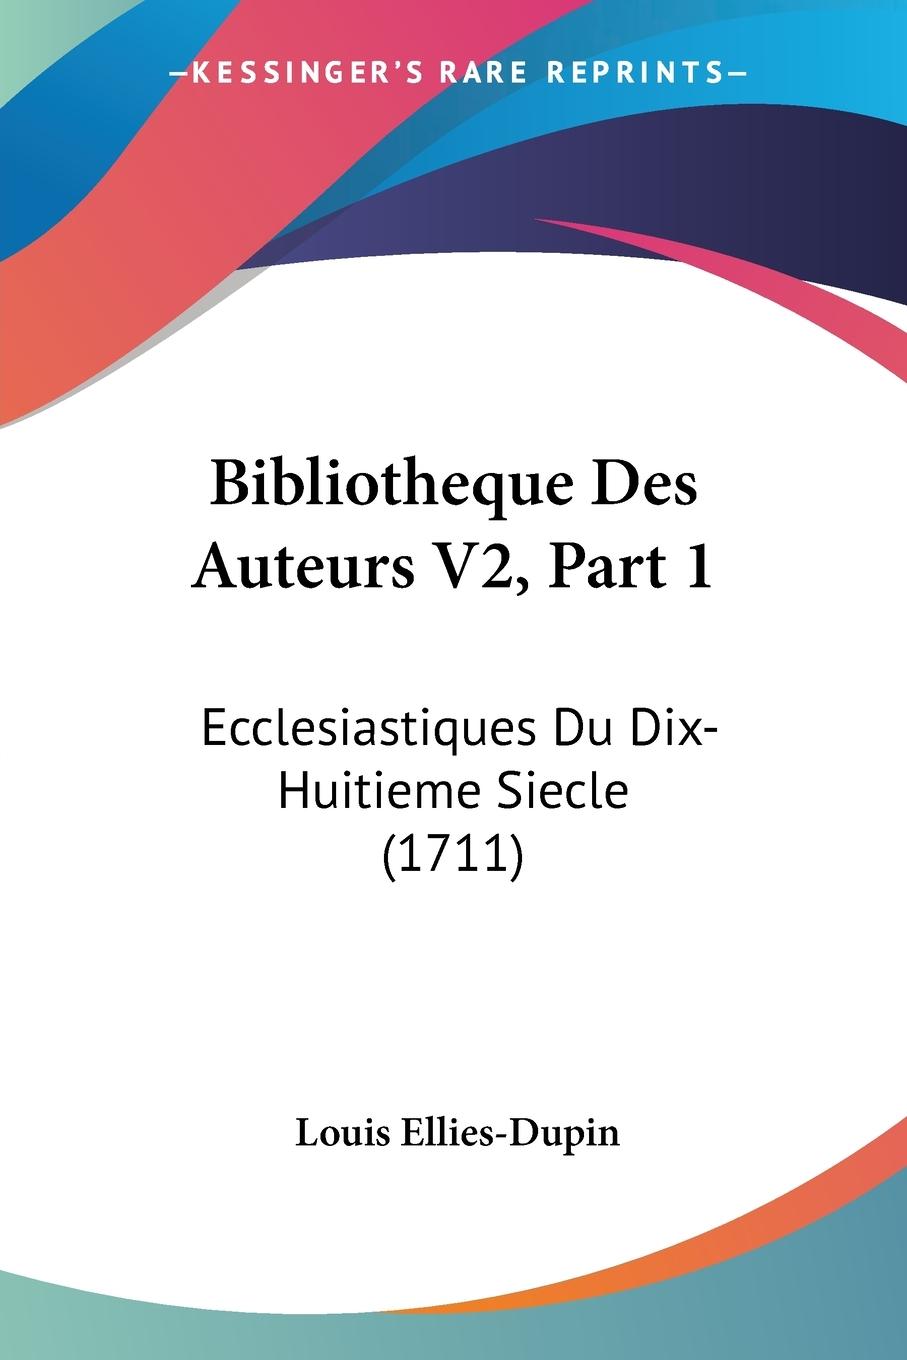 Bibliotheque Des Auteurs V2, Part 1 - Ellies-Dupin, Louis